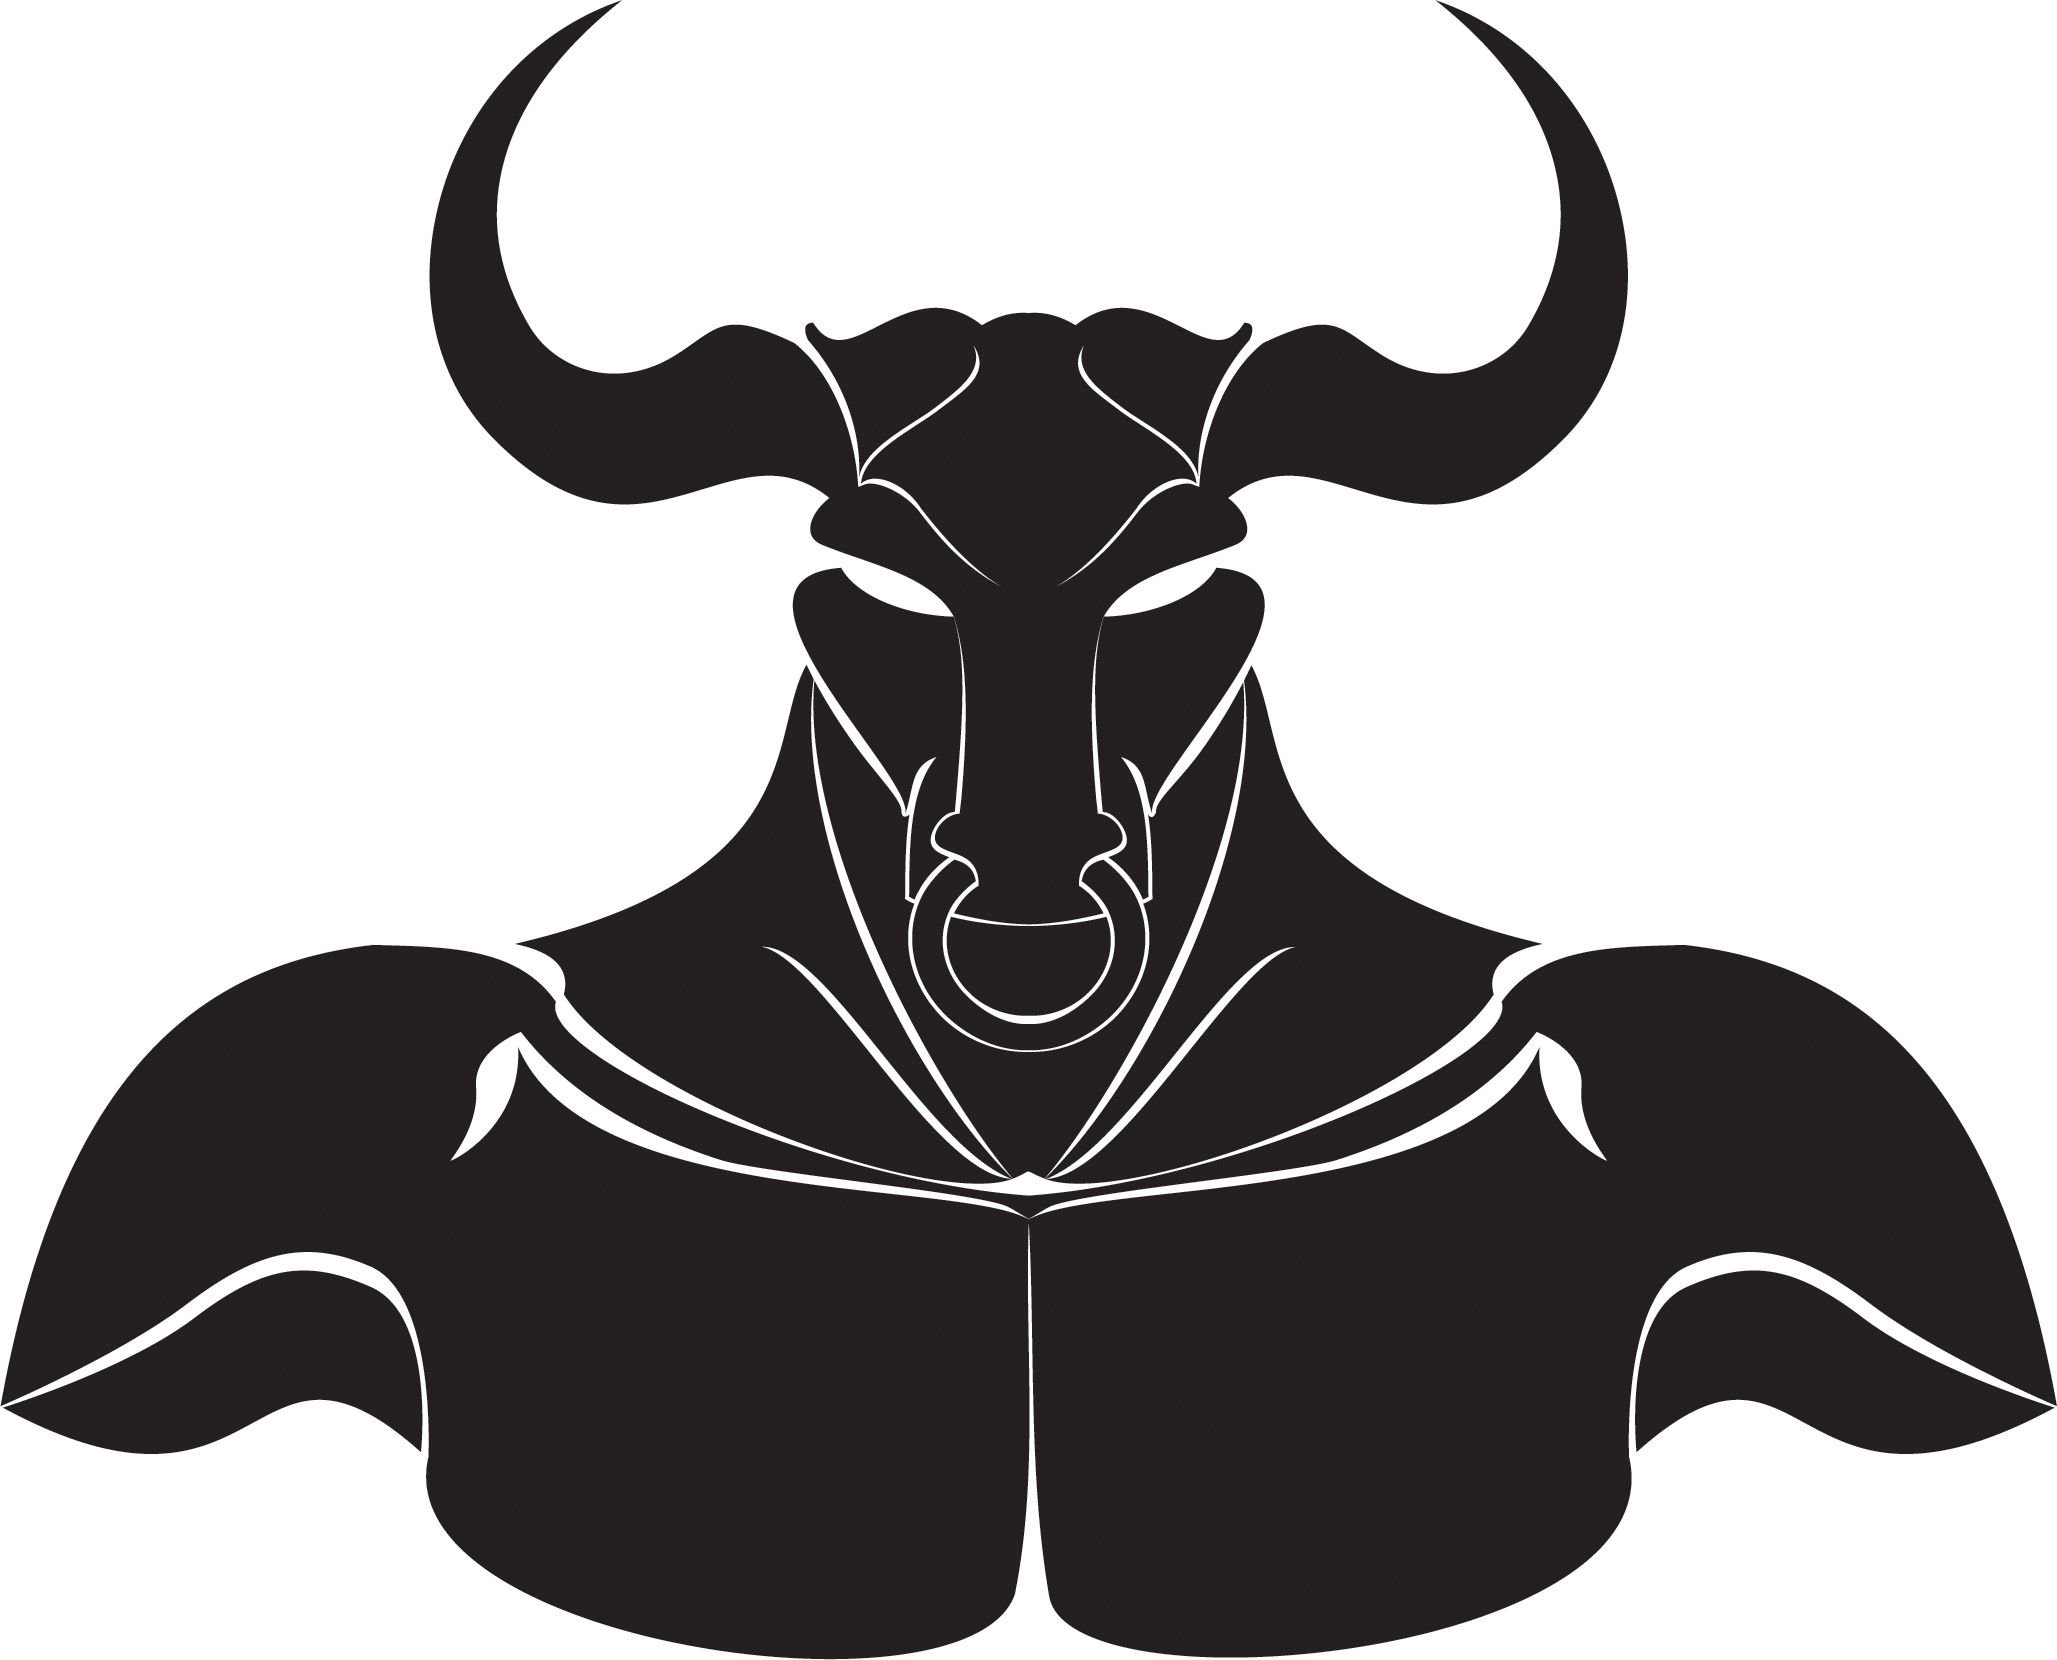 Bull,Bovine,Horn,Working animal,Cow-goat family,Antelope,Illustration